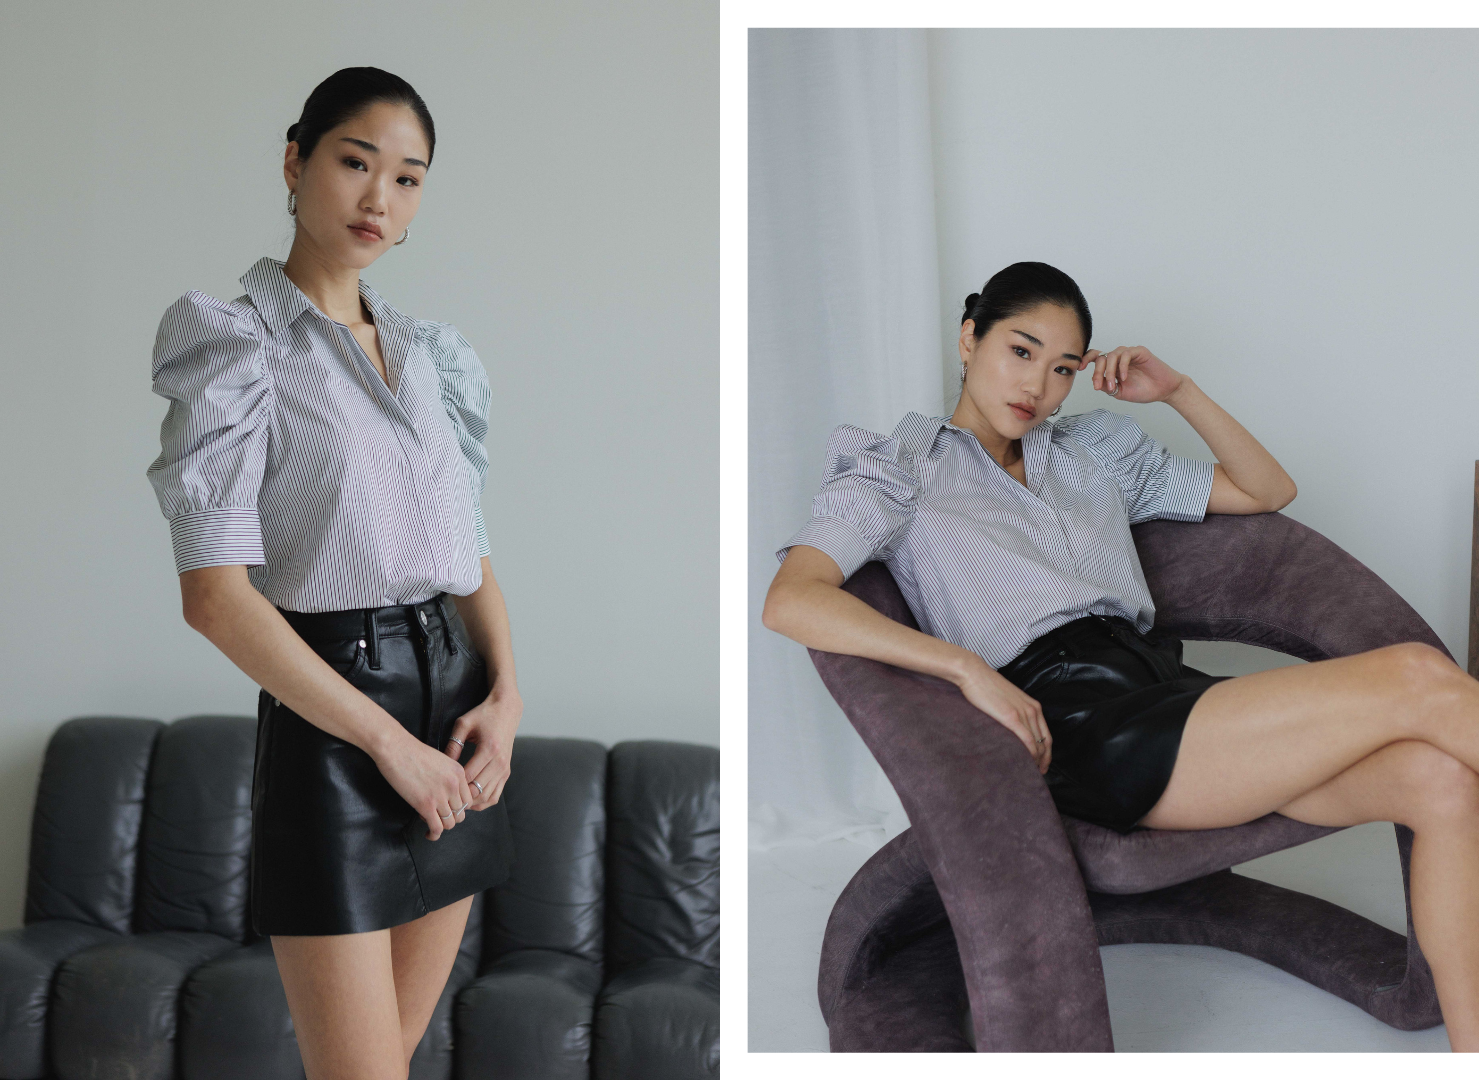 Frame Leather Skirt